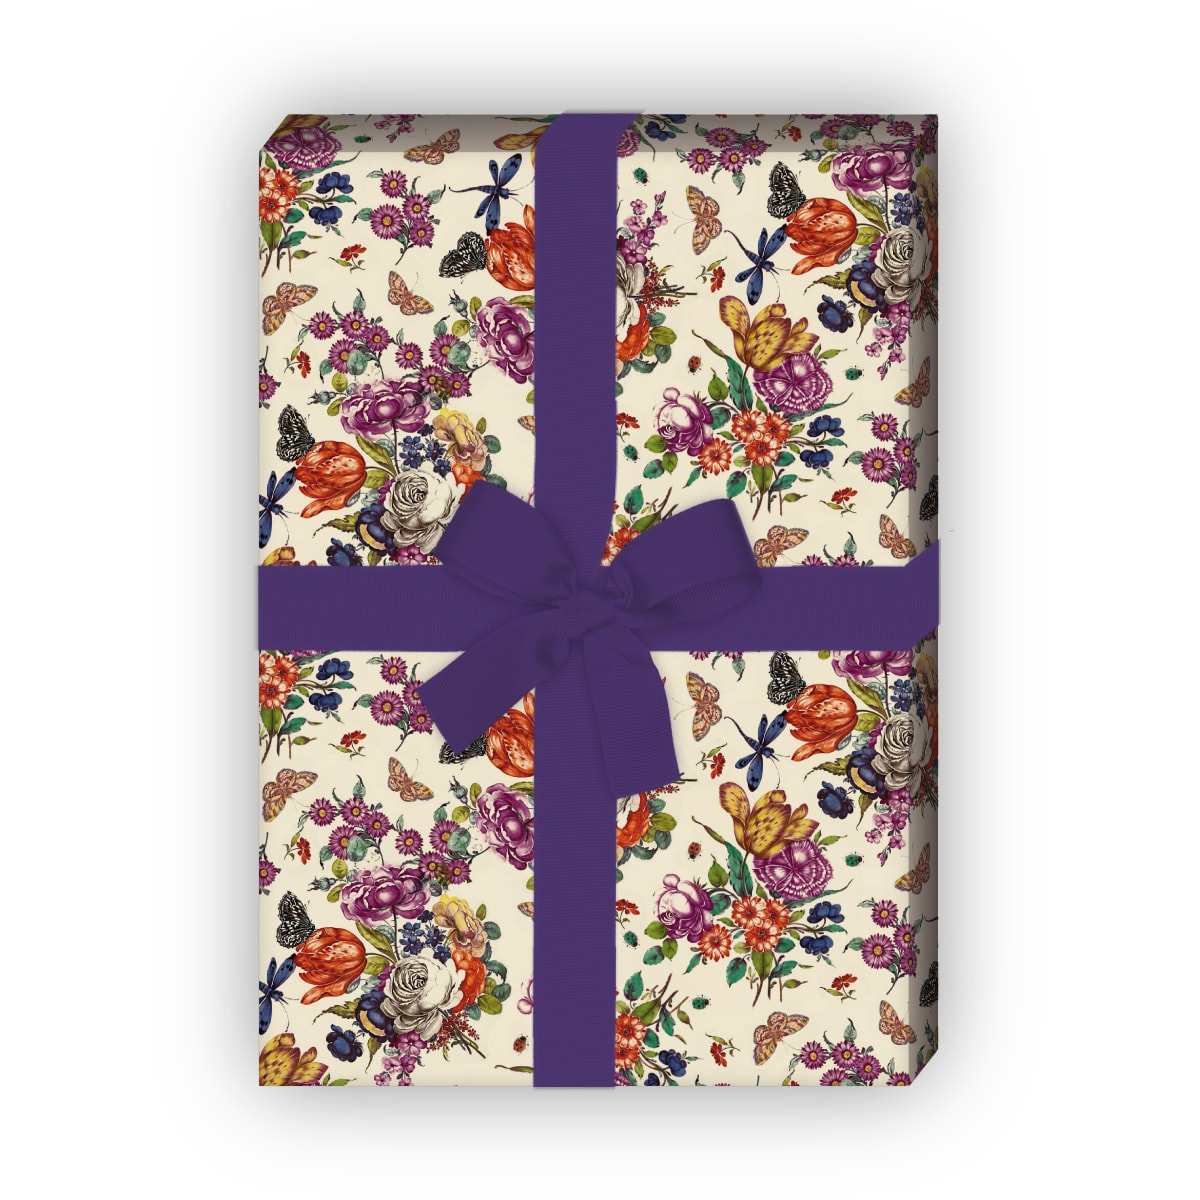 Kartenkaufrausch: Üppiges Geschenkpapier mit Porzellan aus unserer florale Papeterie in beige